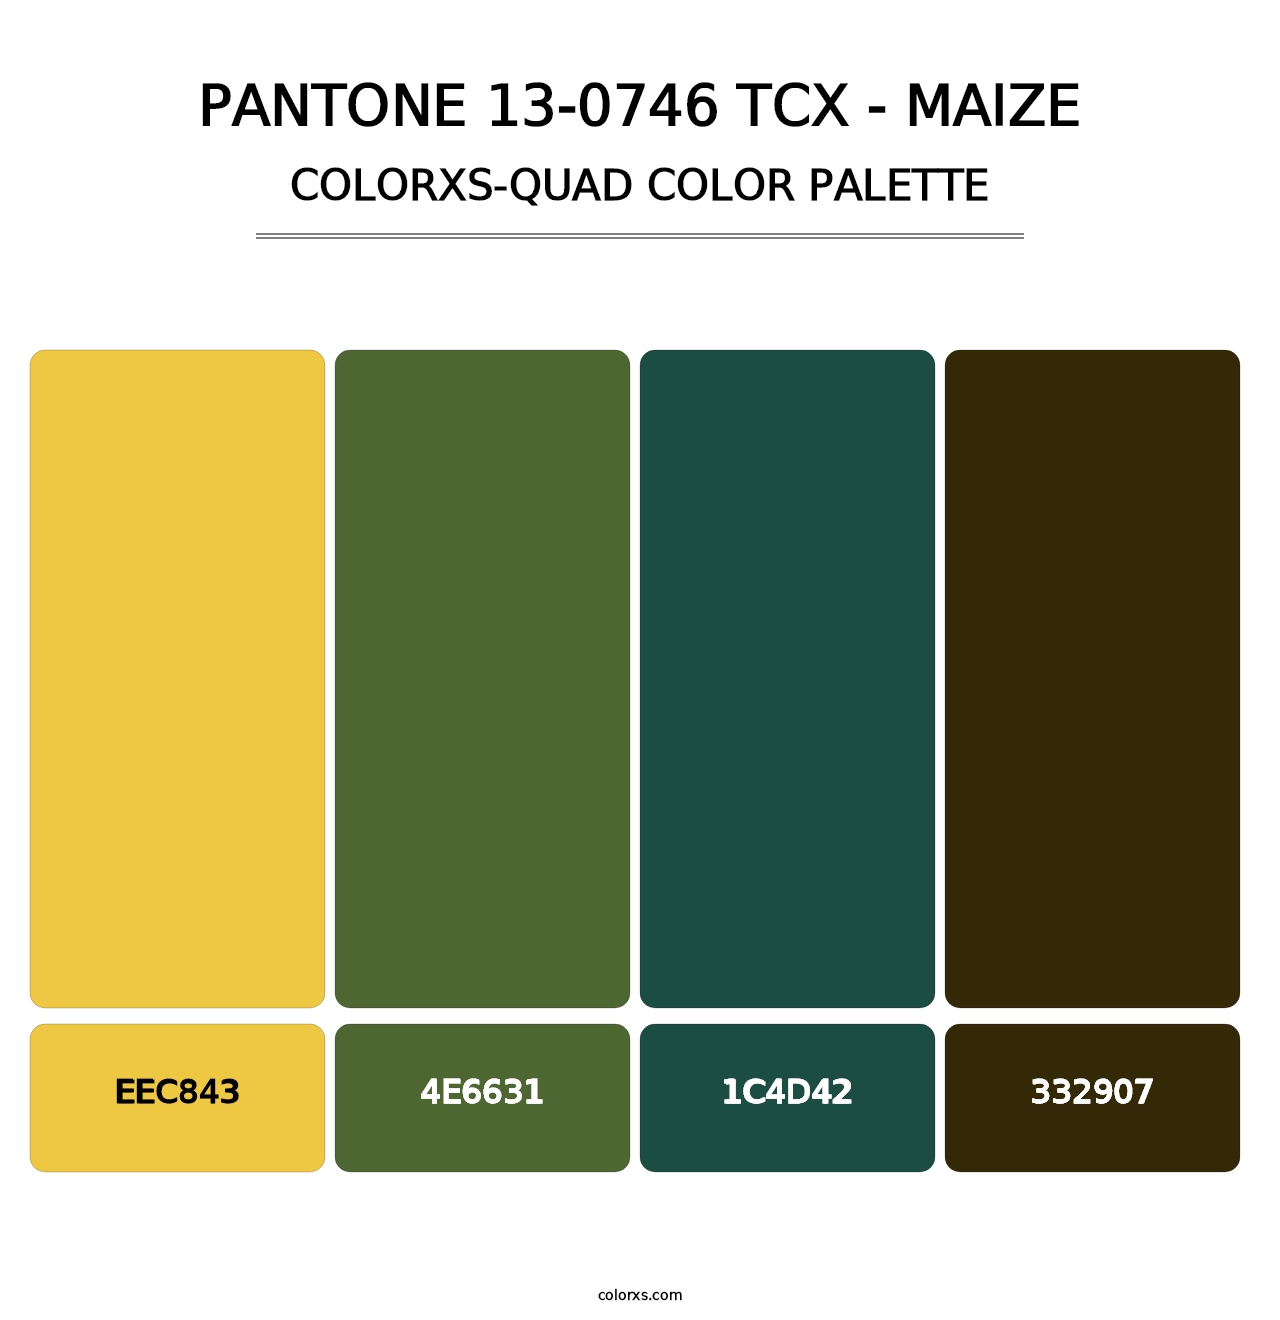 PANTONE 13-0746 TCX - Maize - Colorxs Quad Palette